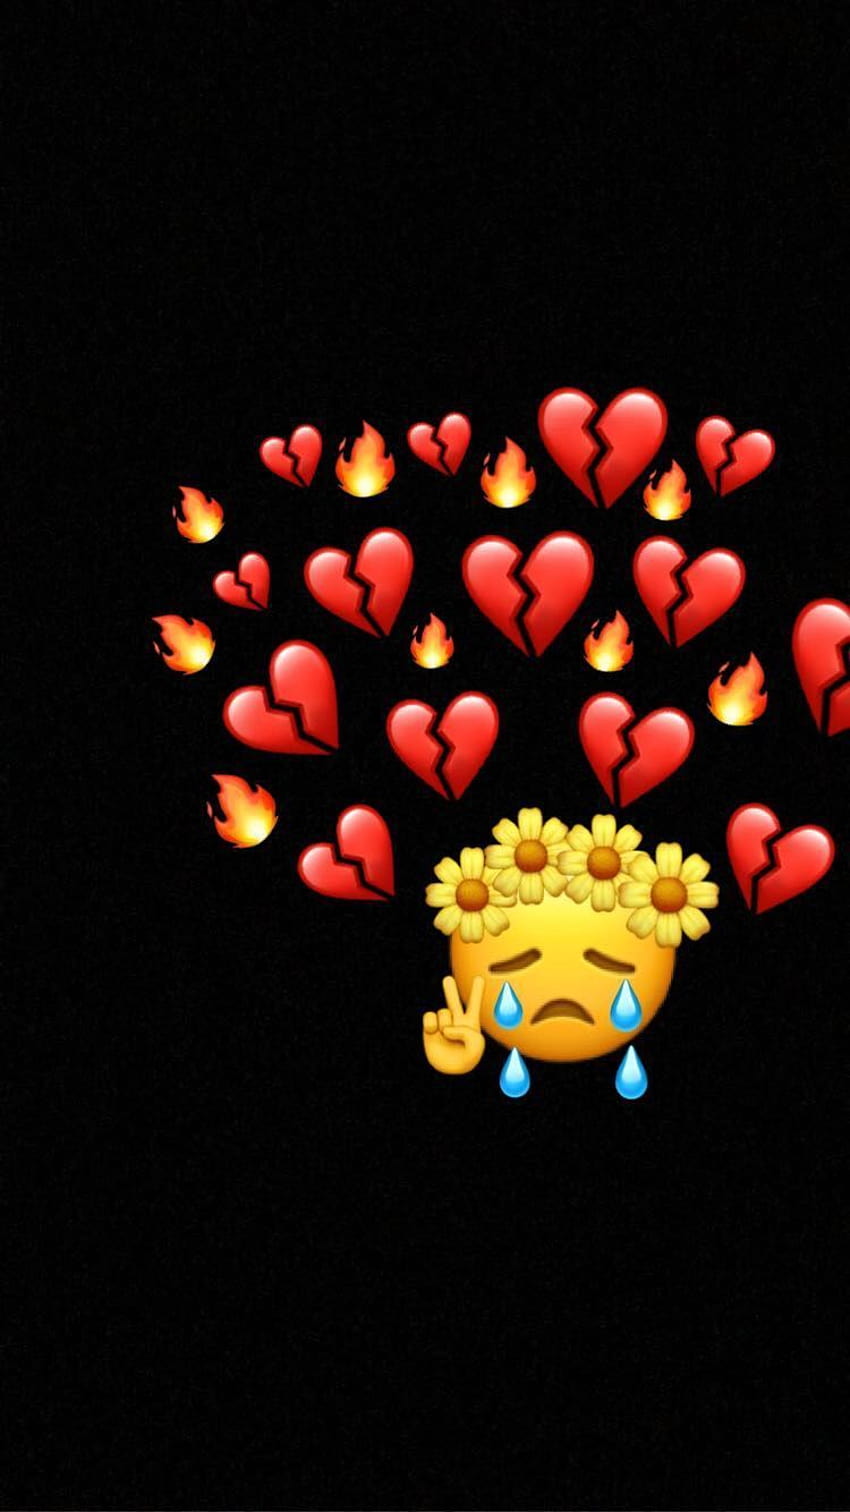 Heart Broken, broken heart emoji HD phone wallpaper | Pxfuel